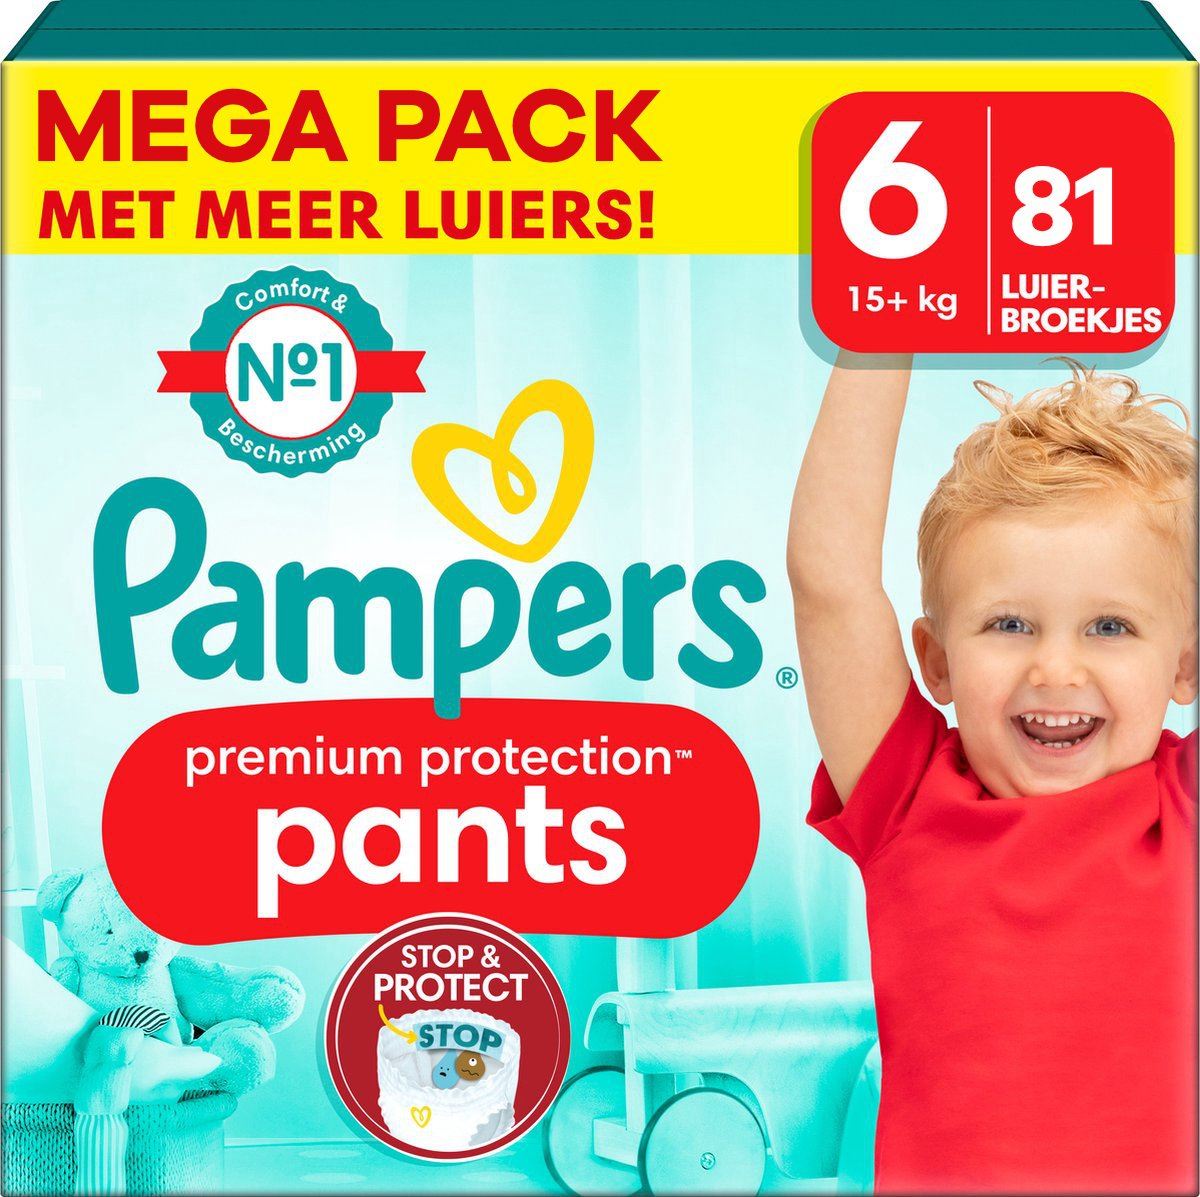 Pampers-Premium-Protection-Pants-maat-6-81-luierbroekjes-15-kg-